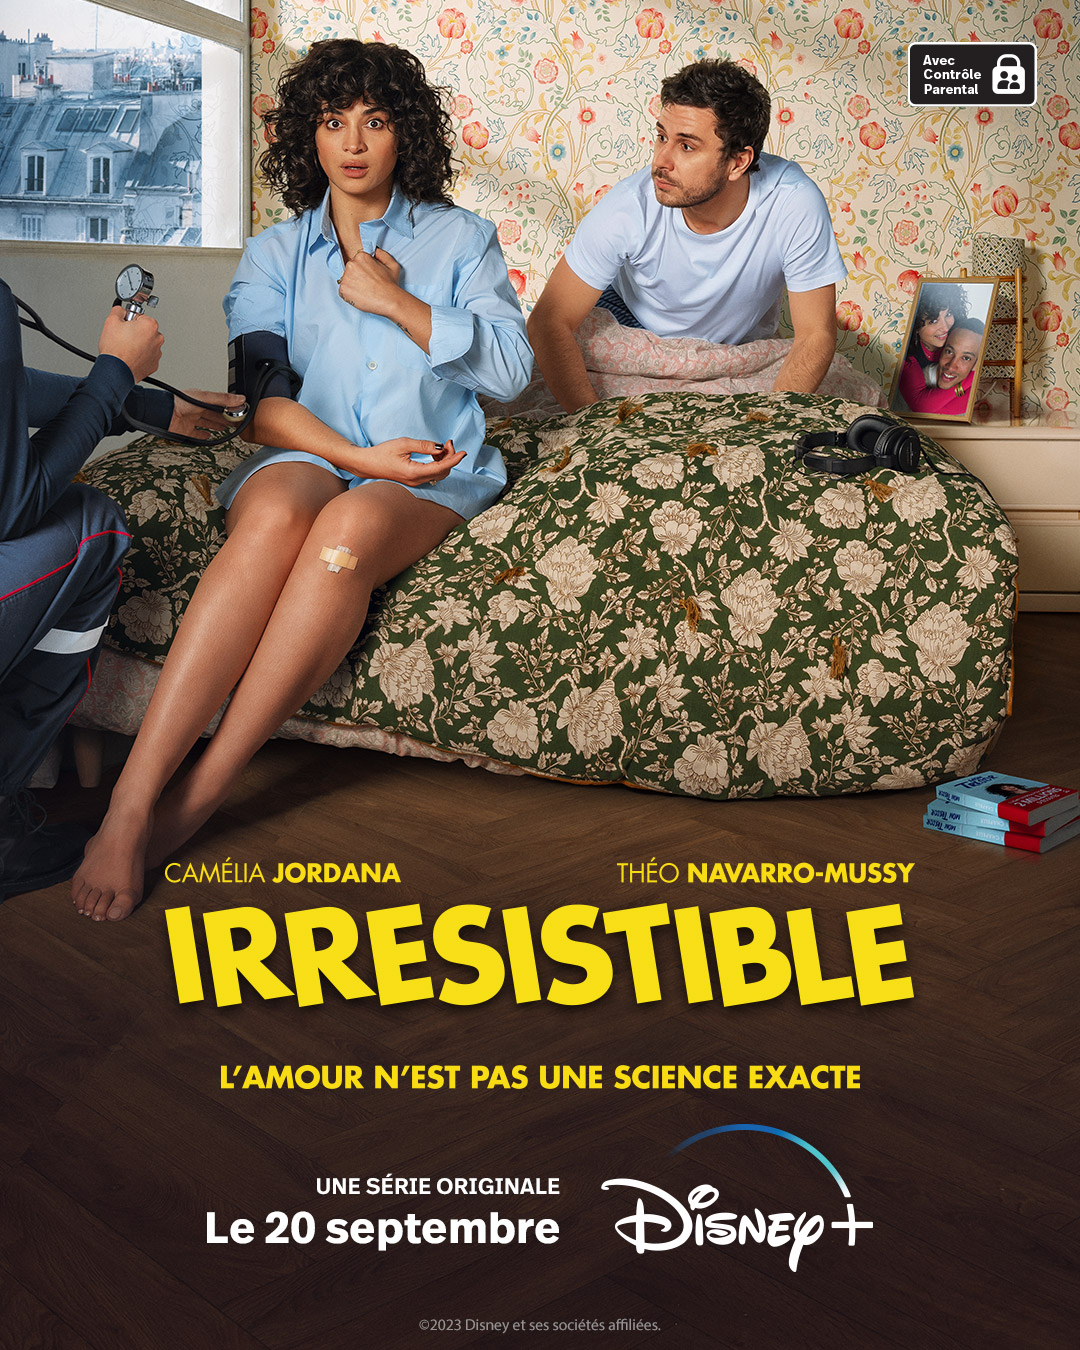 « IRRÉSISTIBLE », la nouvelle série originale française avec Camélia Jordana arrive à partir du 20 septembre sur Disney+